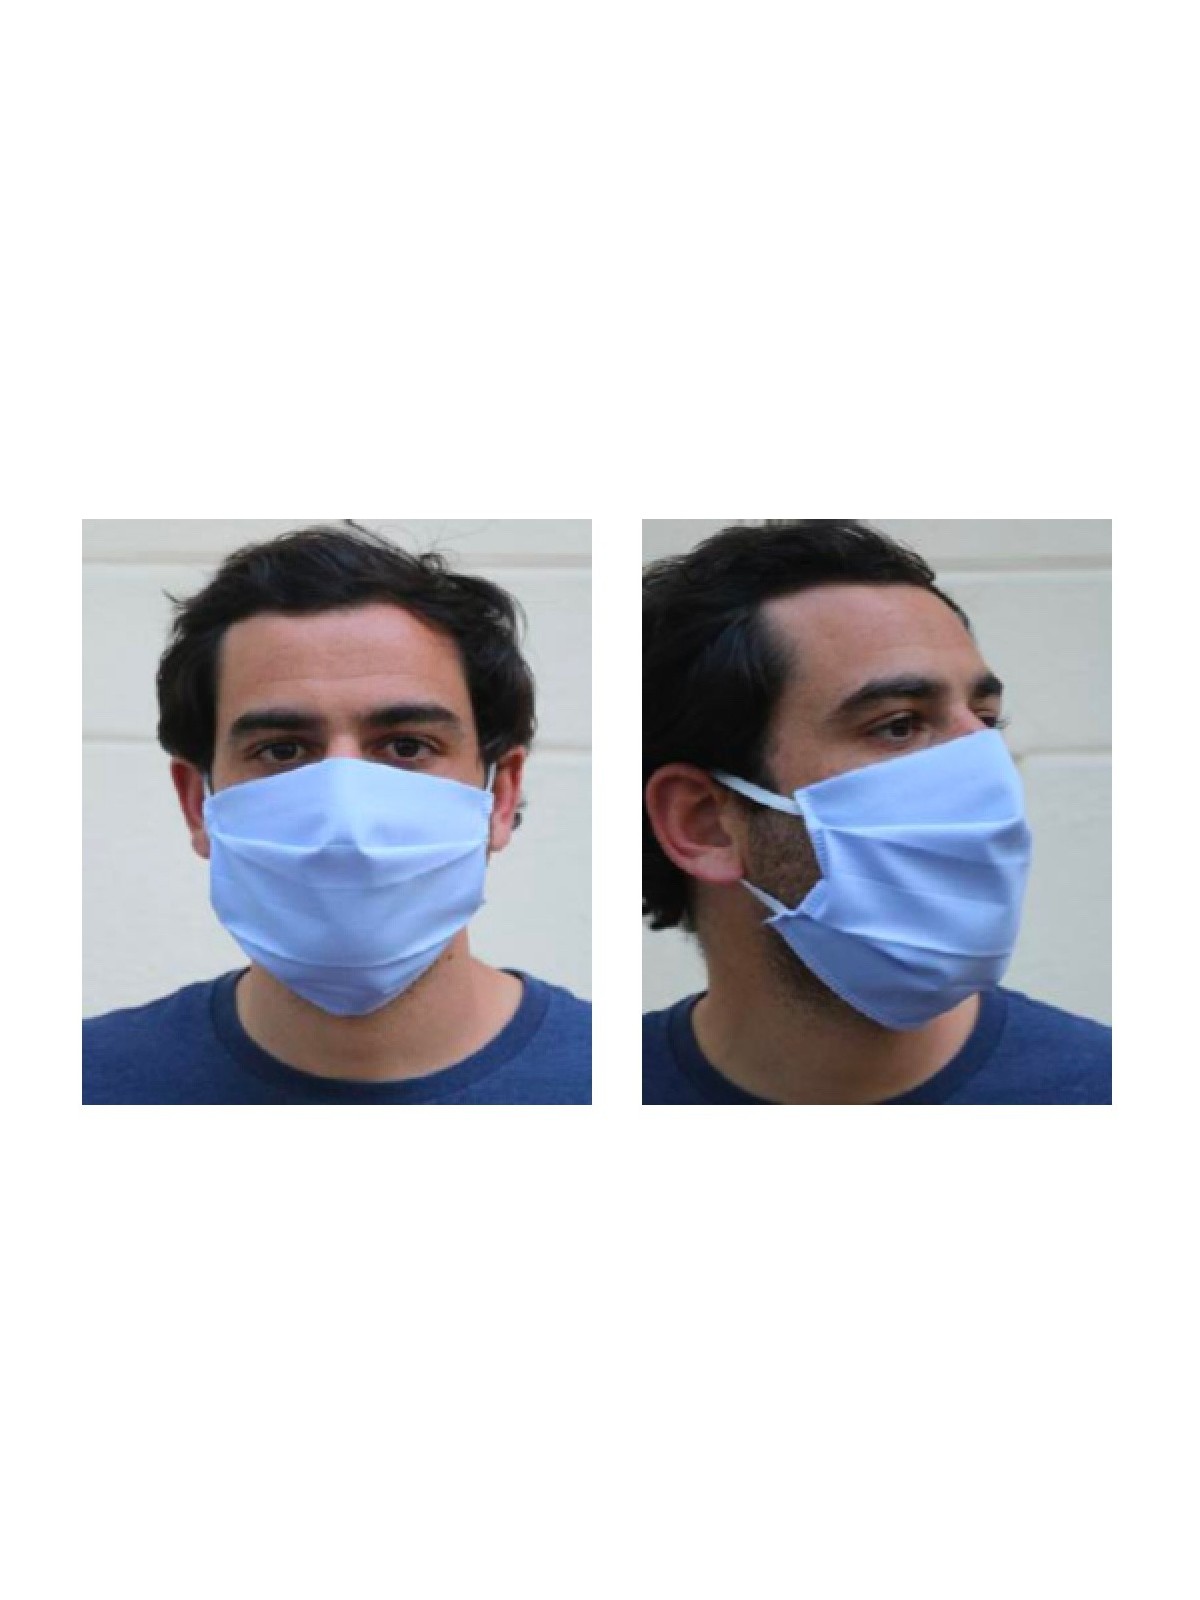 08-016 Masque de protection alternatif réutilisable et lavable homologué DGA personnalisé